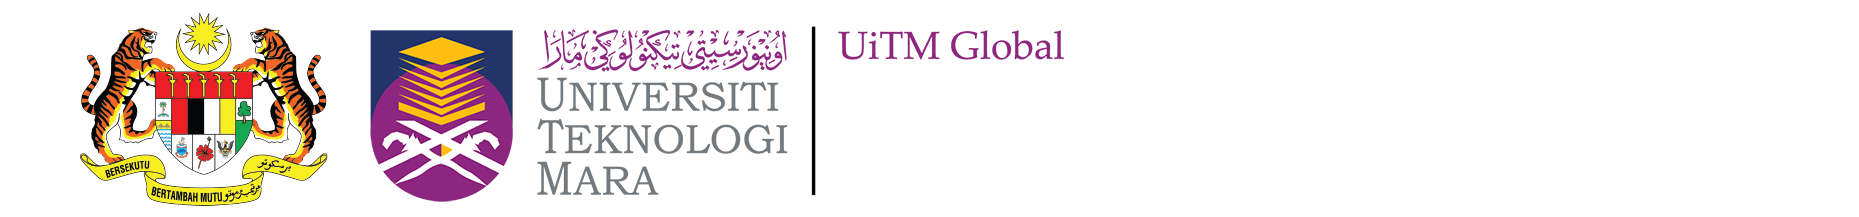 UiTM Global